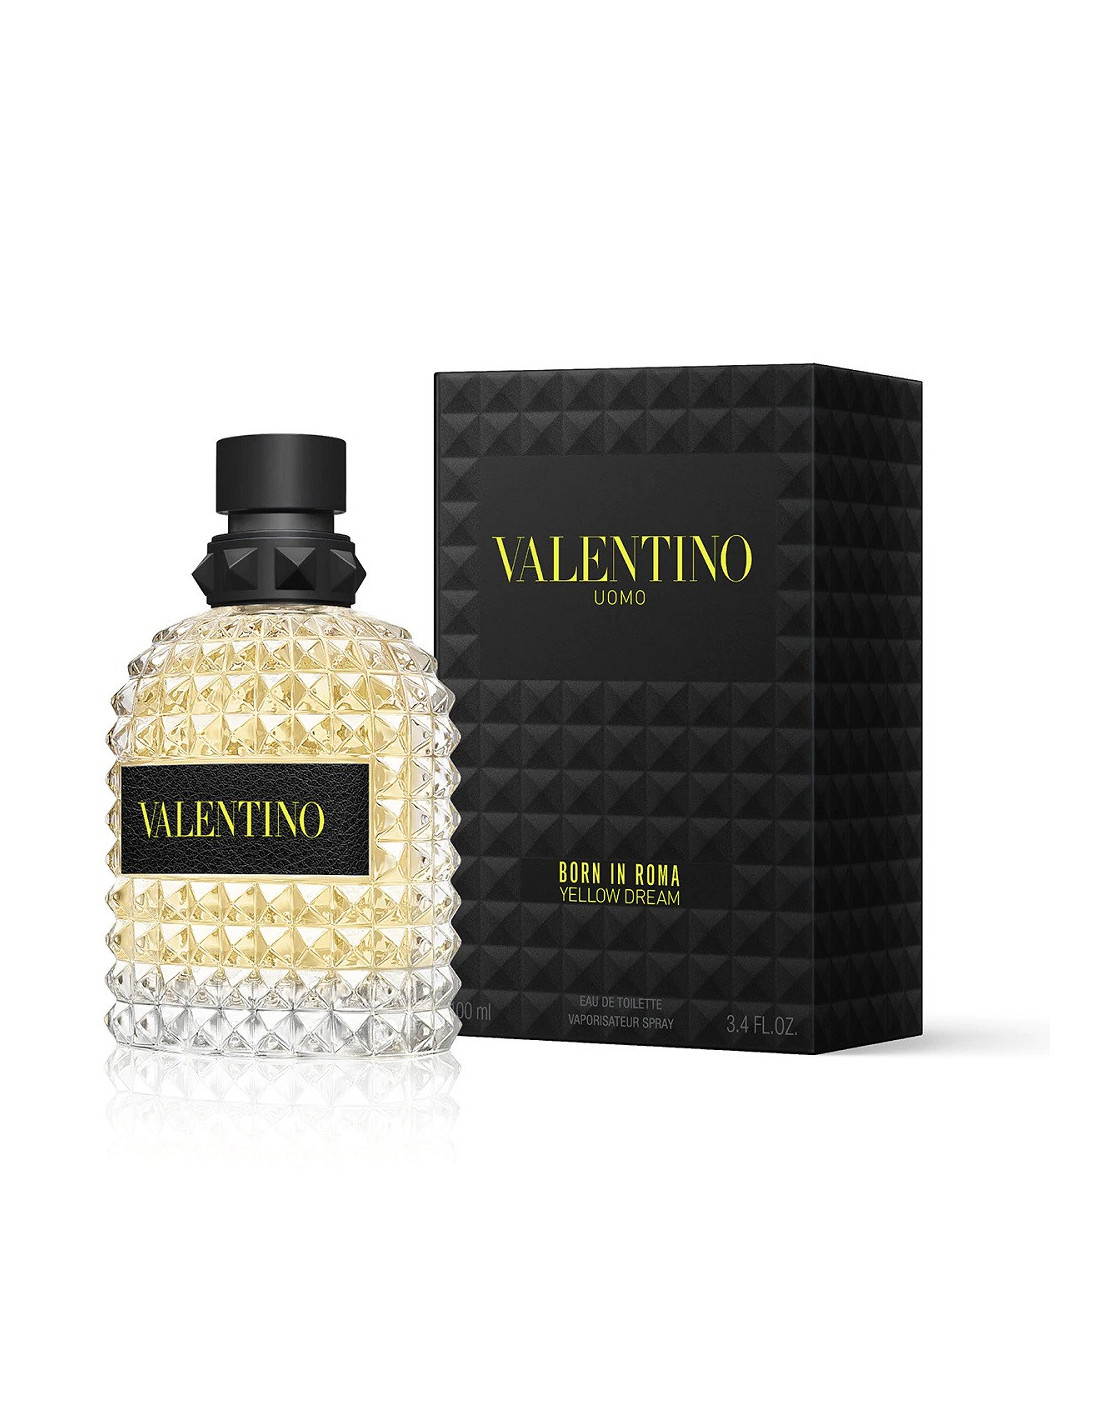 Valentino Uomo Born in Roma Yellow Dream Eau de Toilette spray Profumo